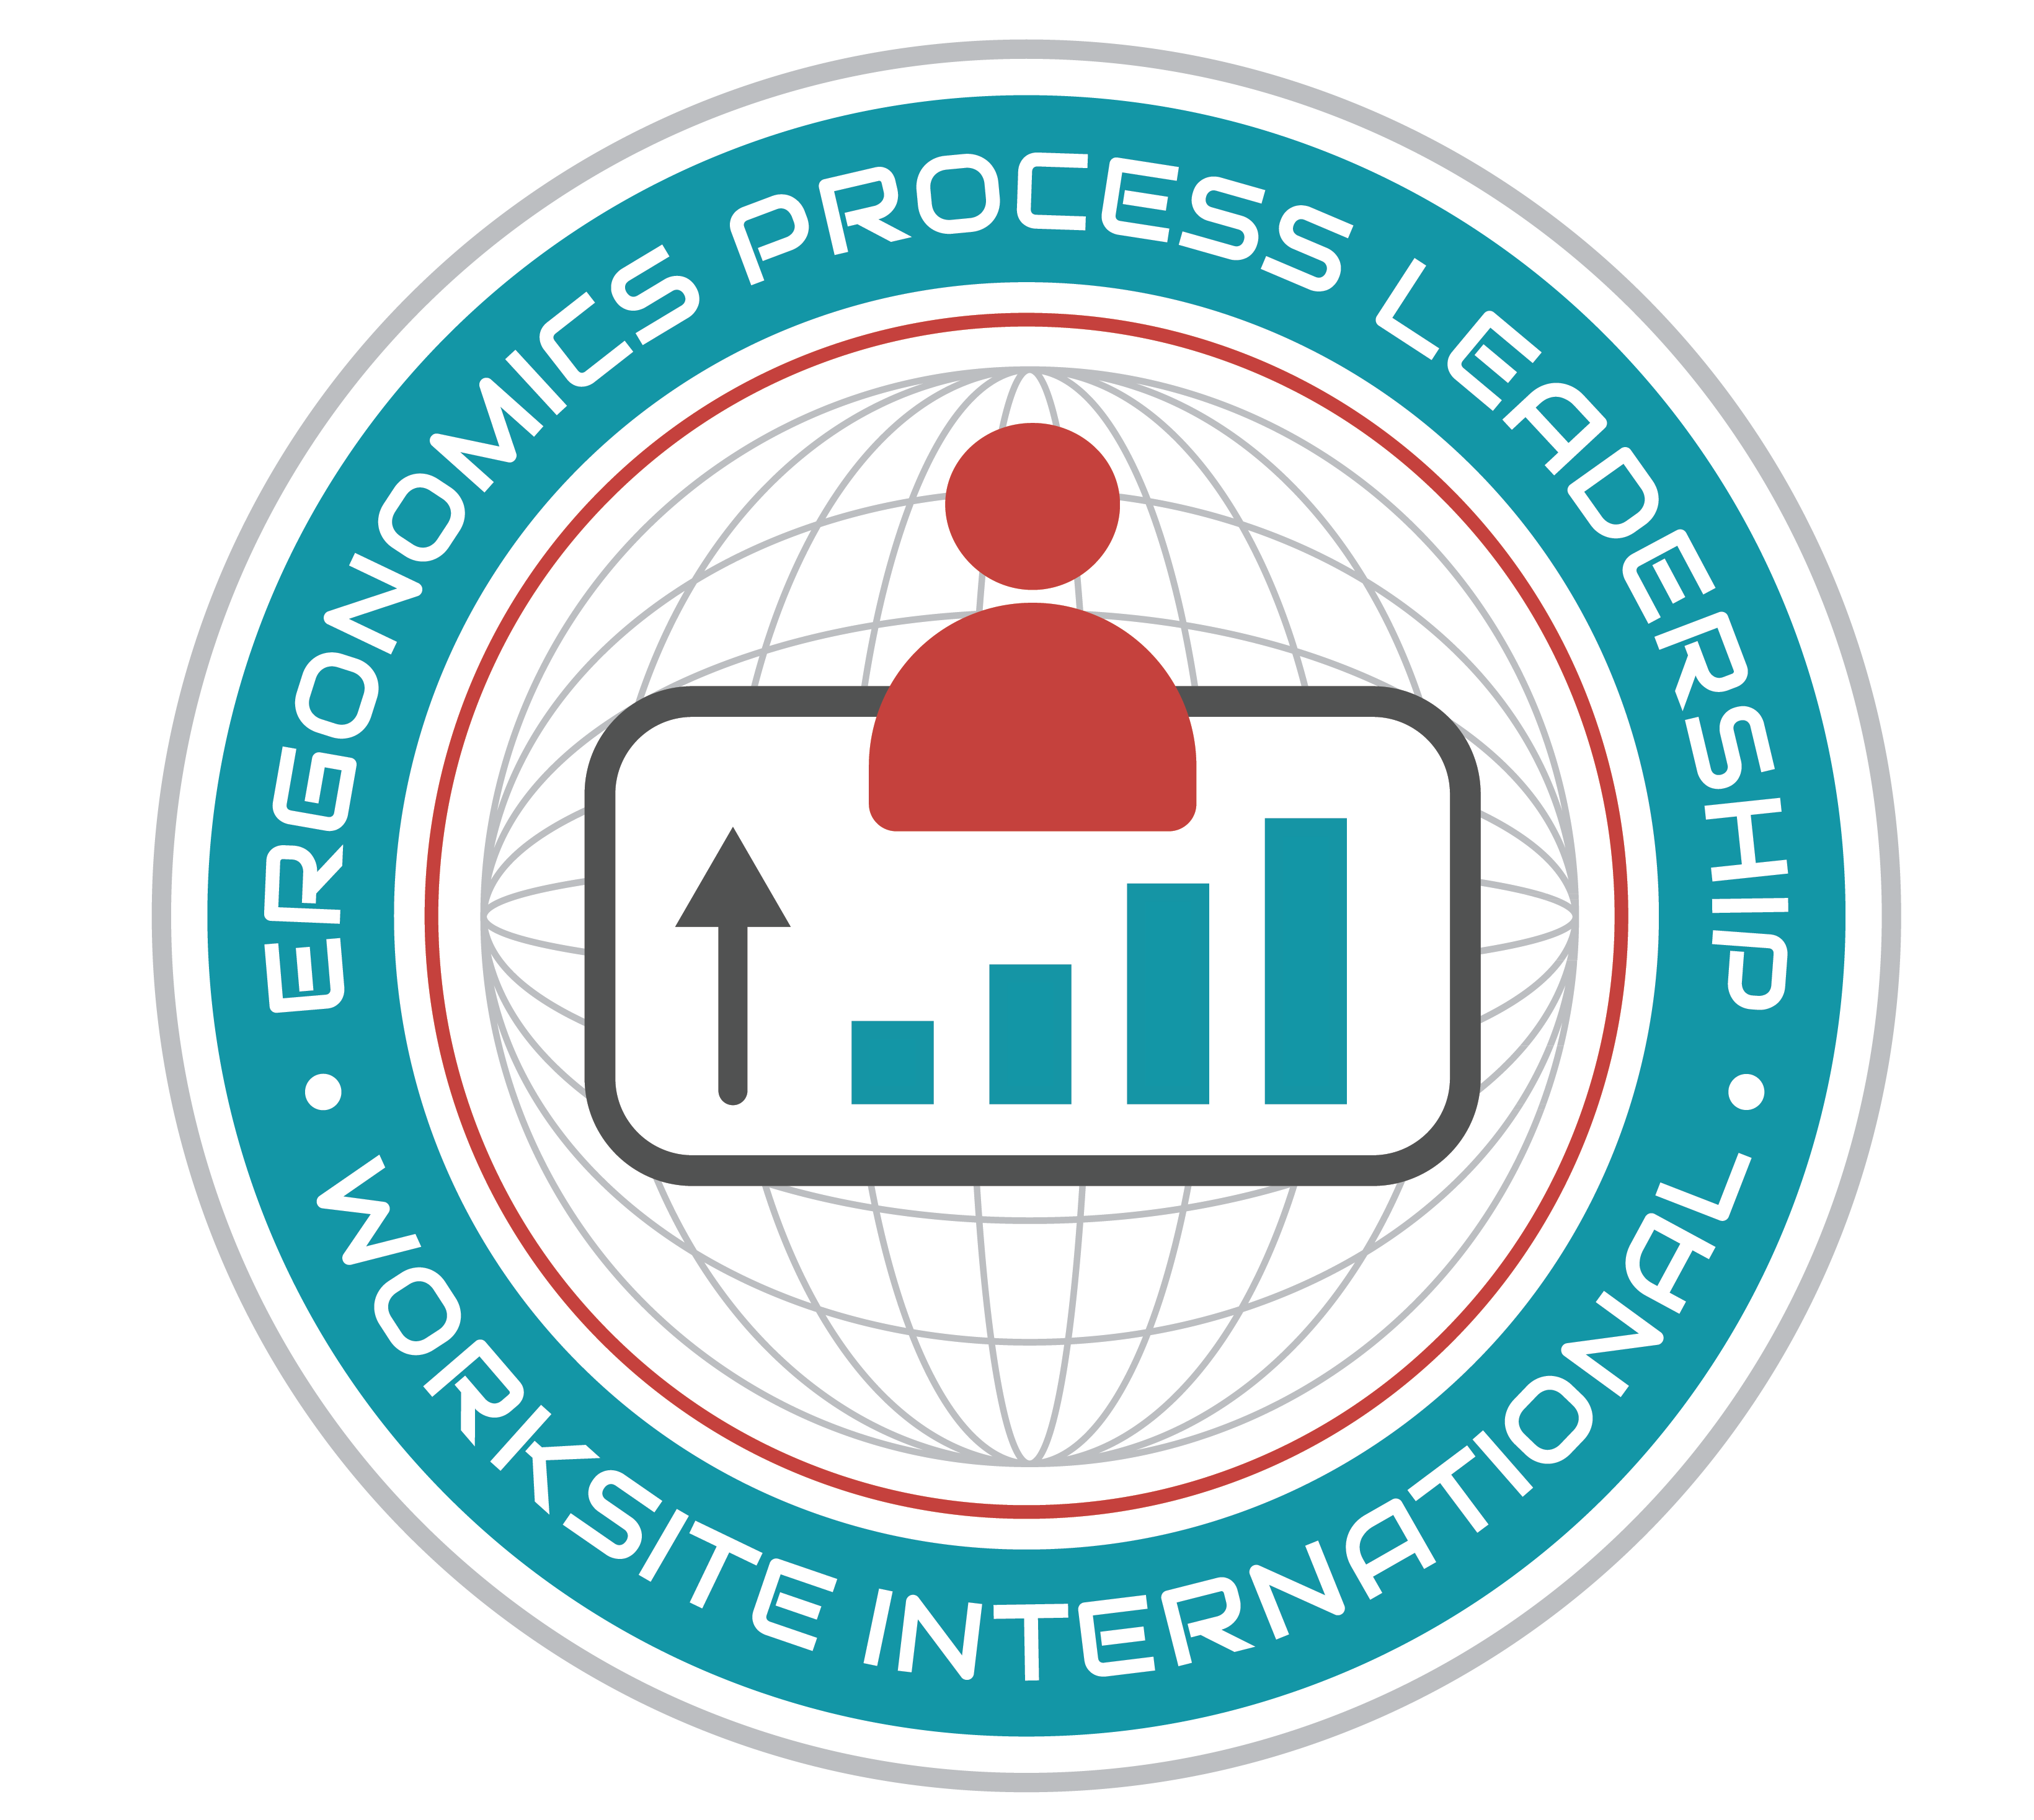 Become a Better Ergonomics Process Leader